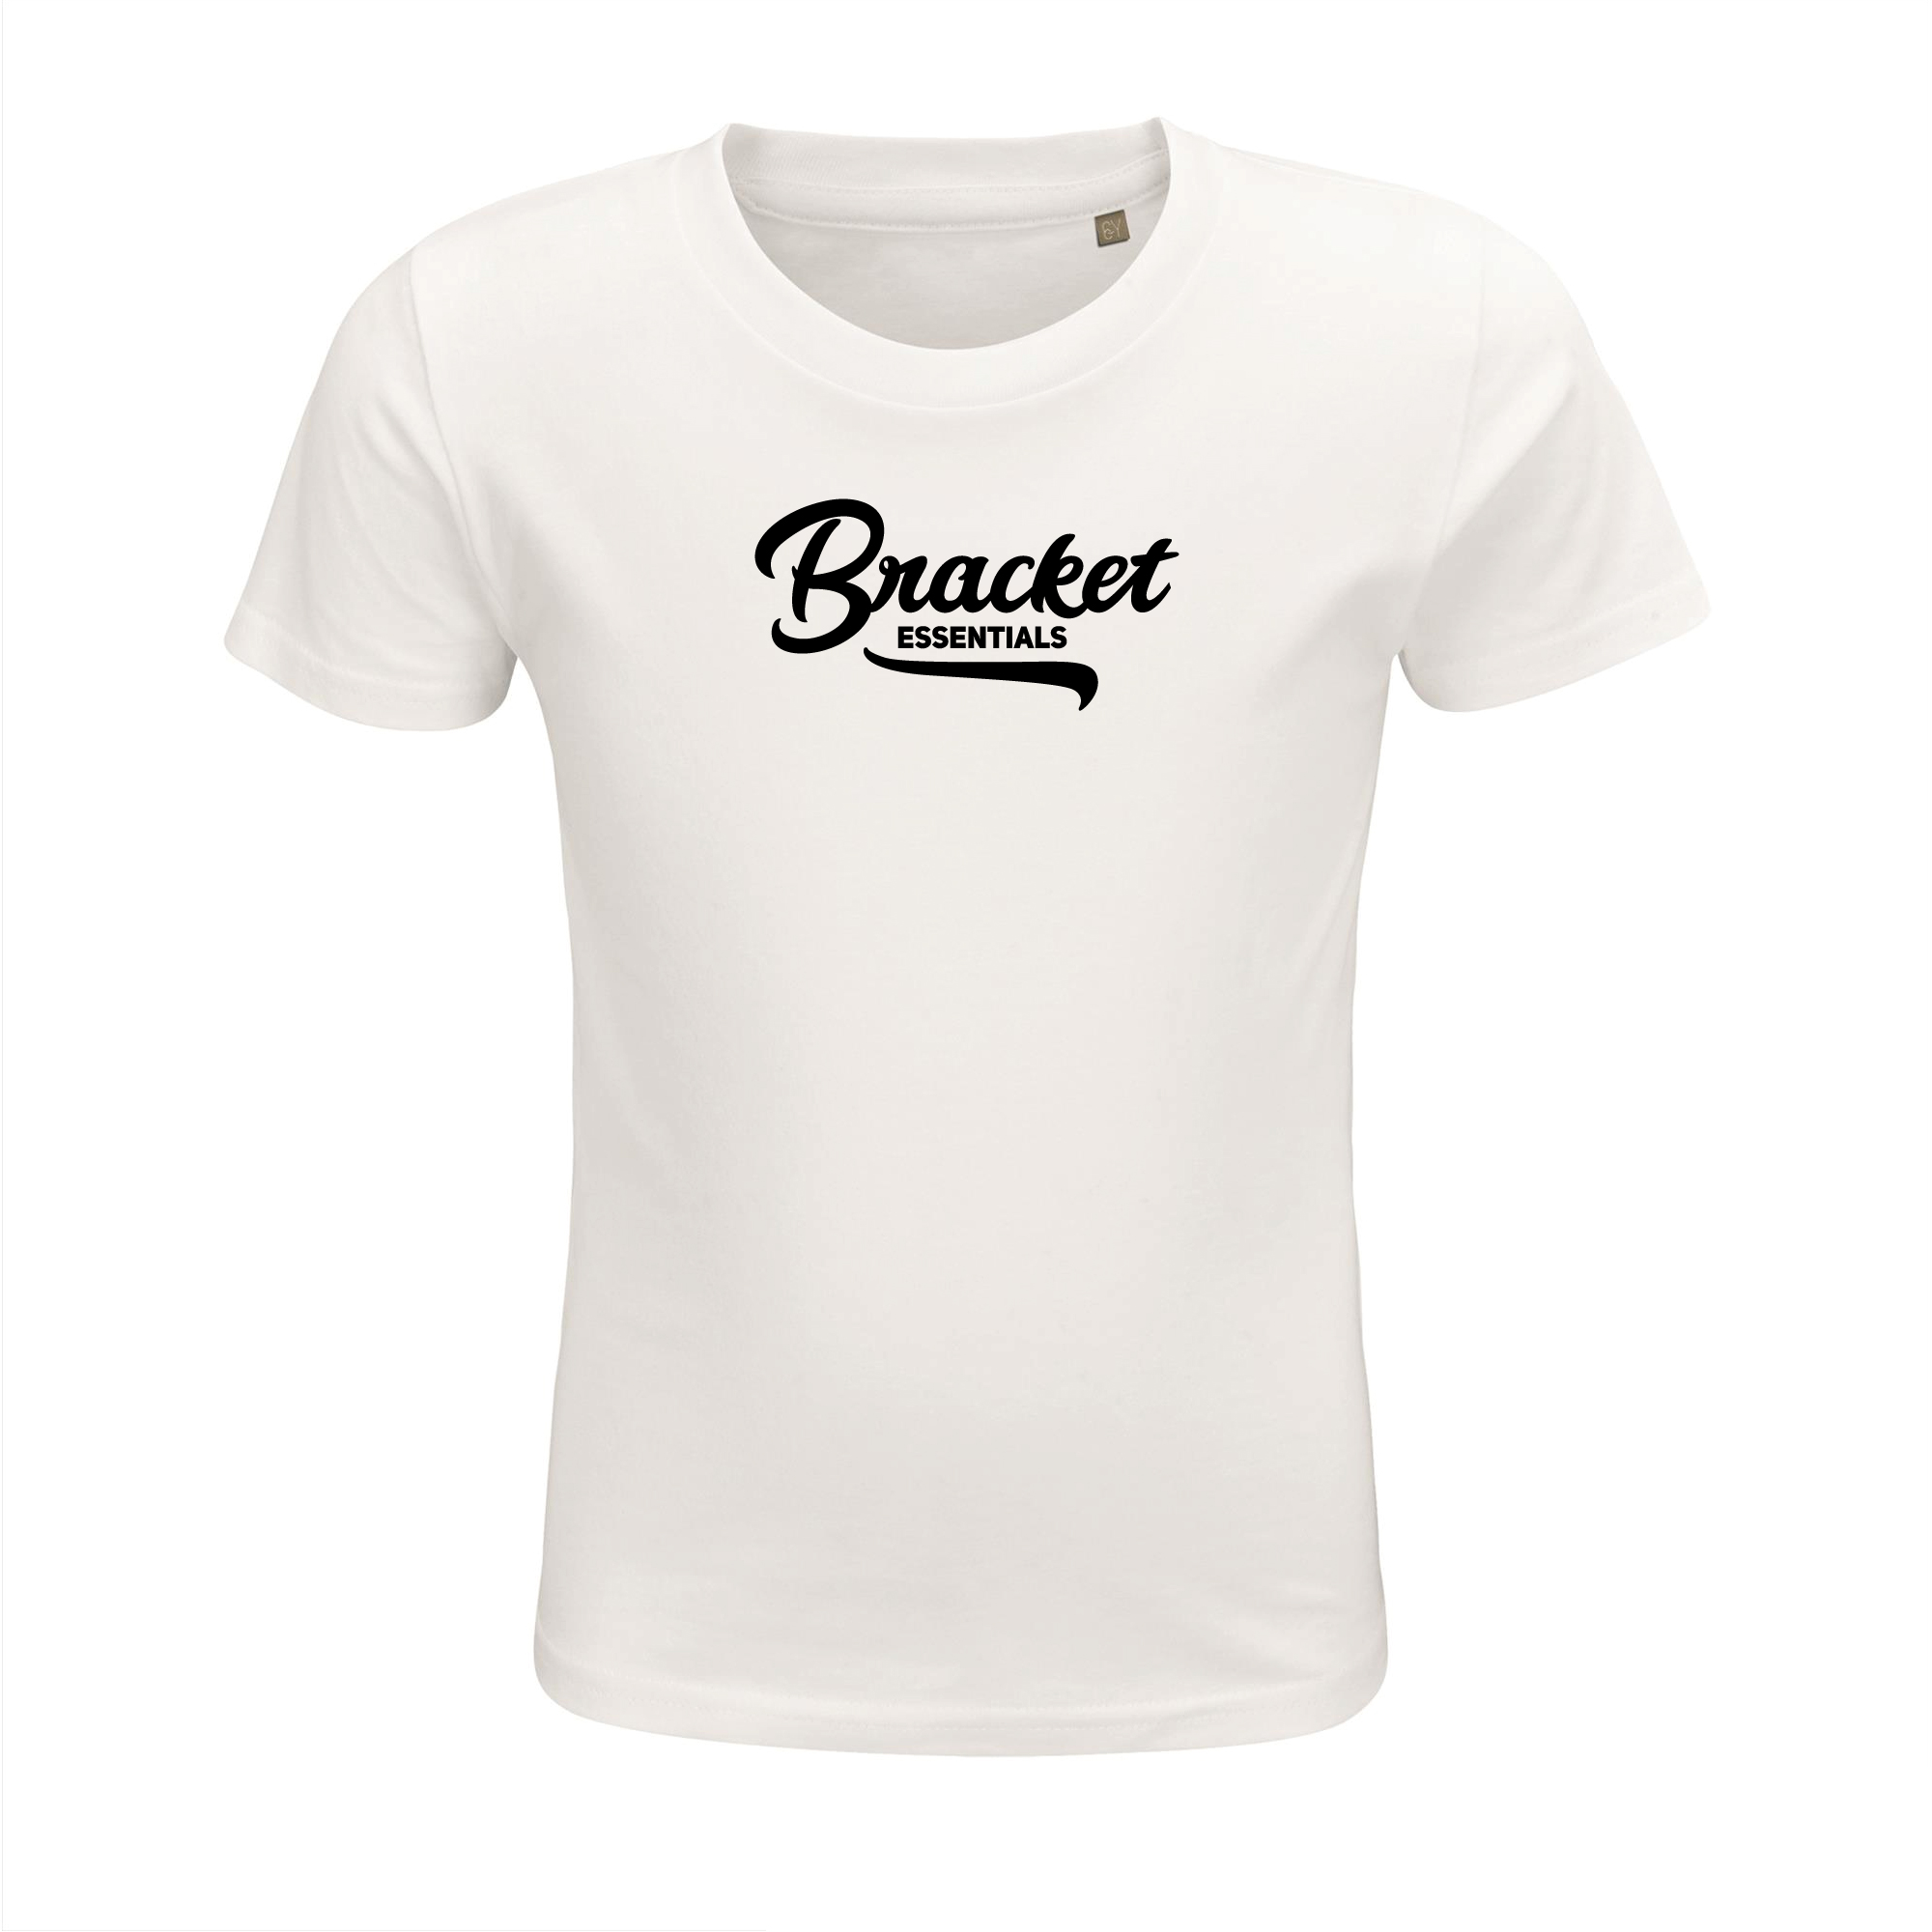 Bracket kinder T-shirt Wit Zwarte - Bracket official